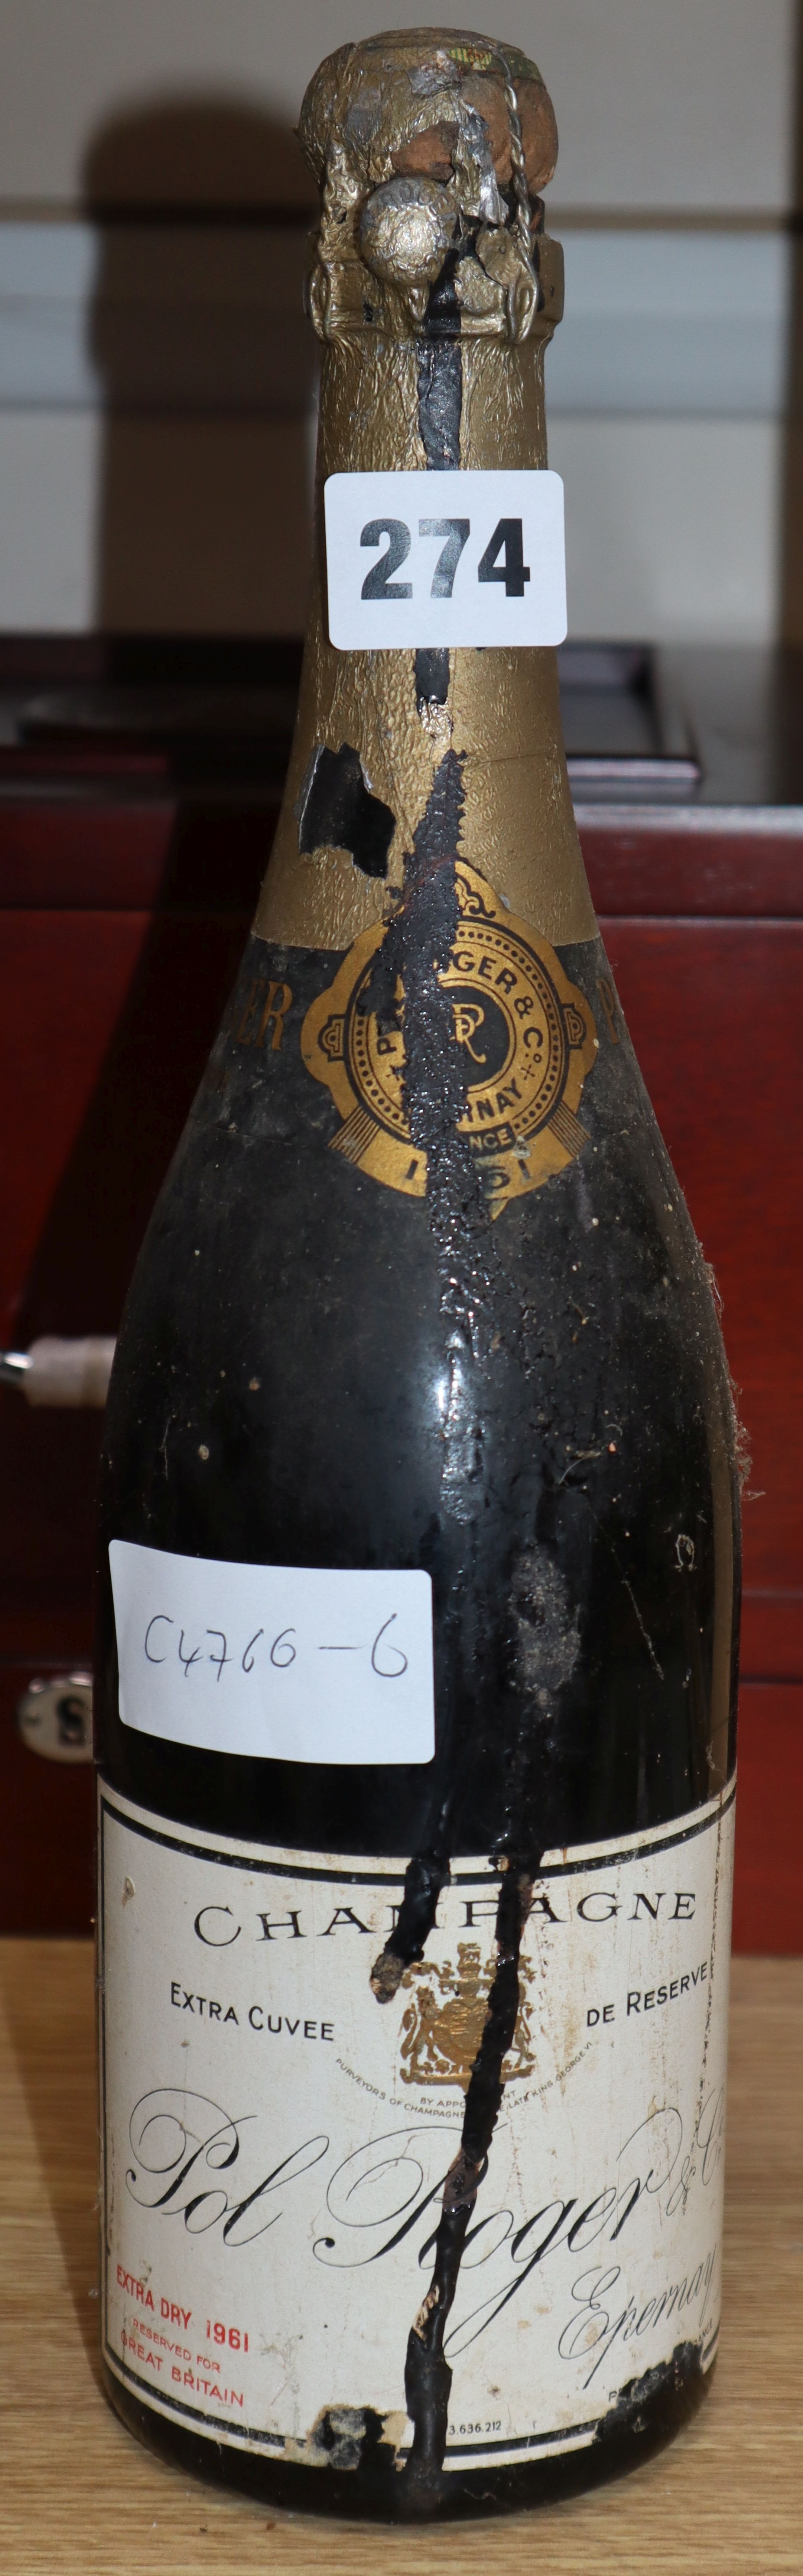 A bottle Pol Roger 1961 champagne